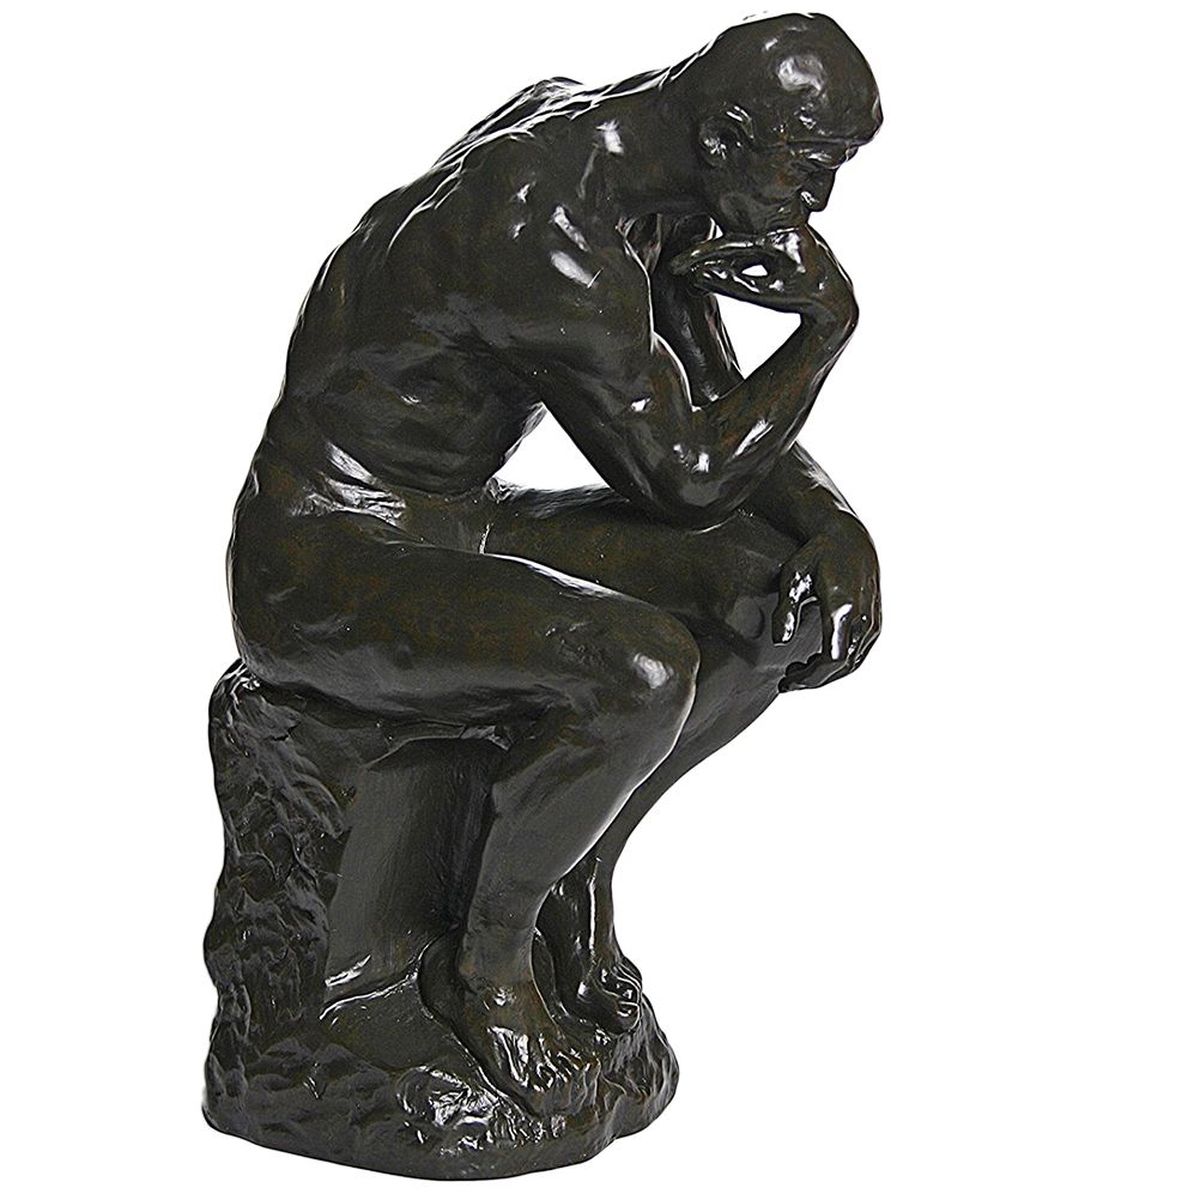 Le Penseur d' Auguste Rodin statue de collection 37 cm